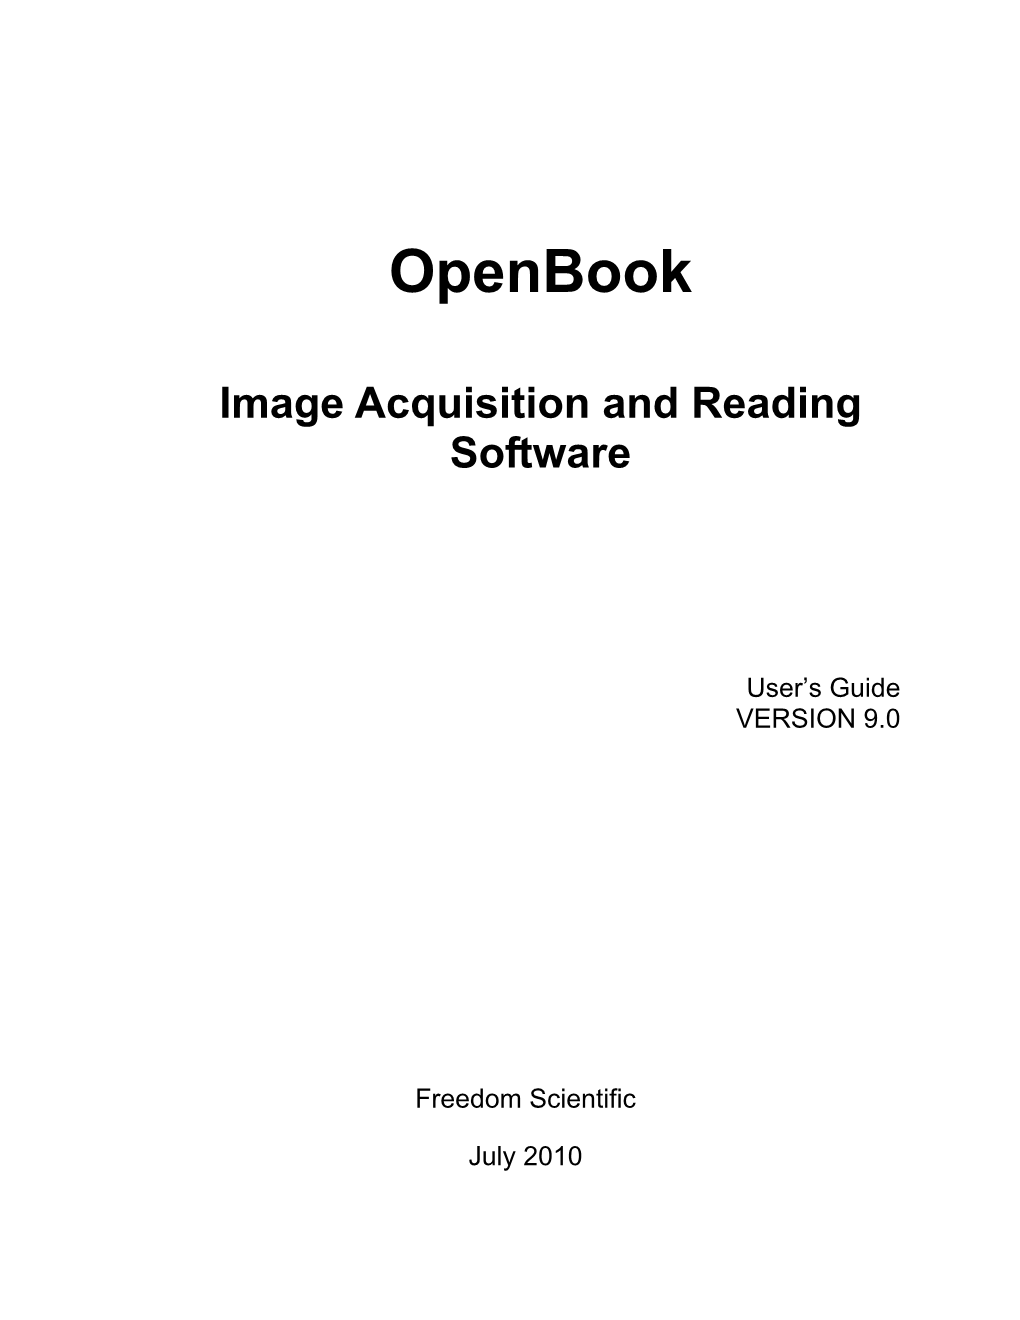 Openbook User Manual (PDF)